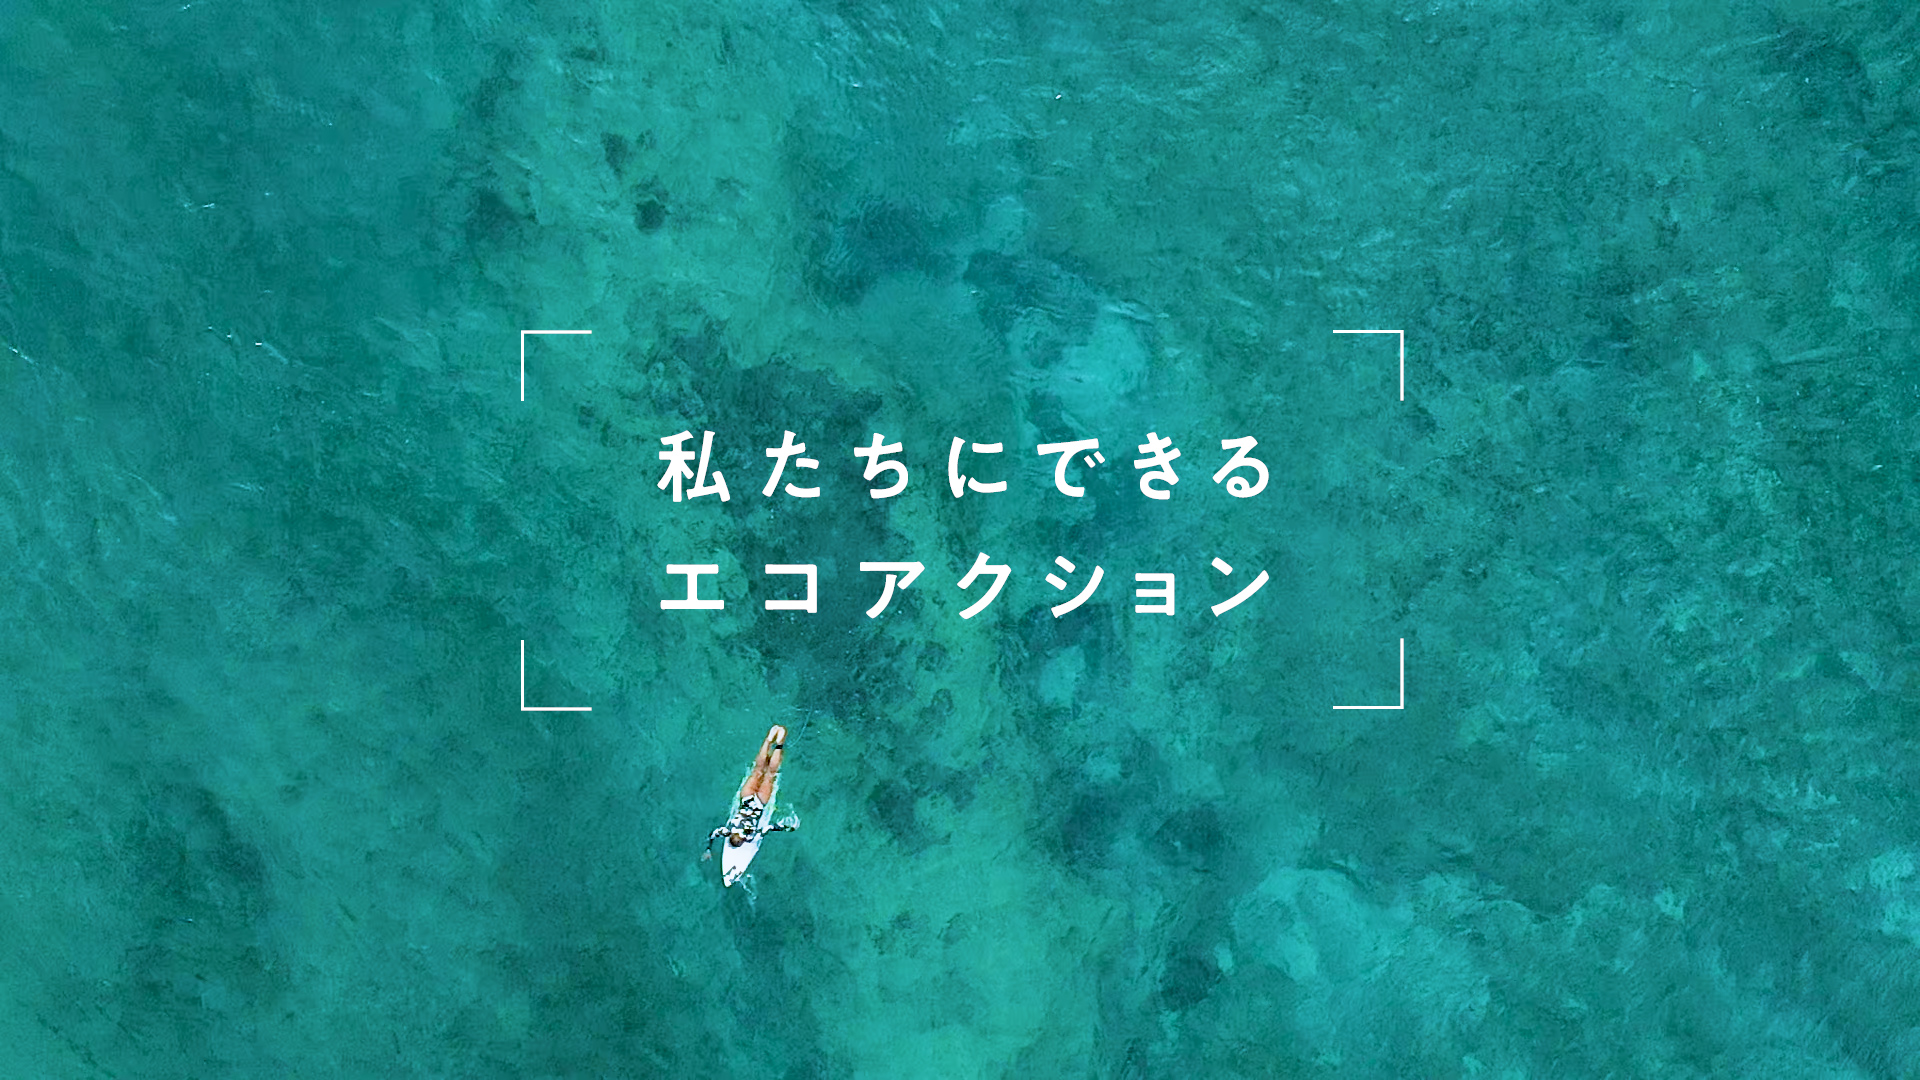 日本を代表するプロサーファー松田詩野の最新映像公開 Billabong 私たちにできるエコアクション Surfmedia